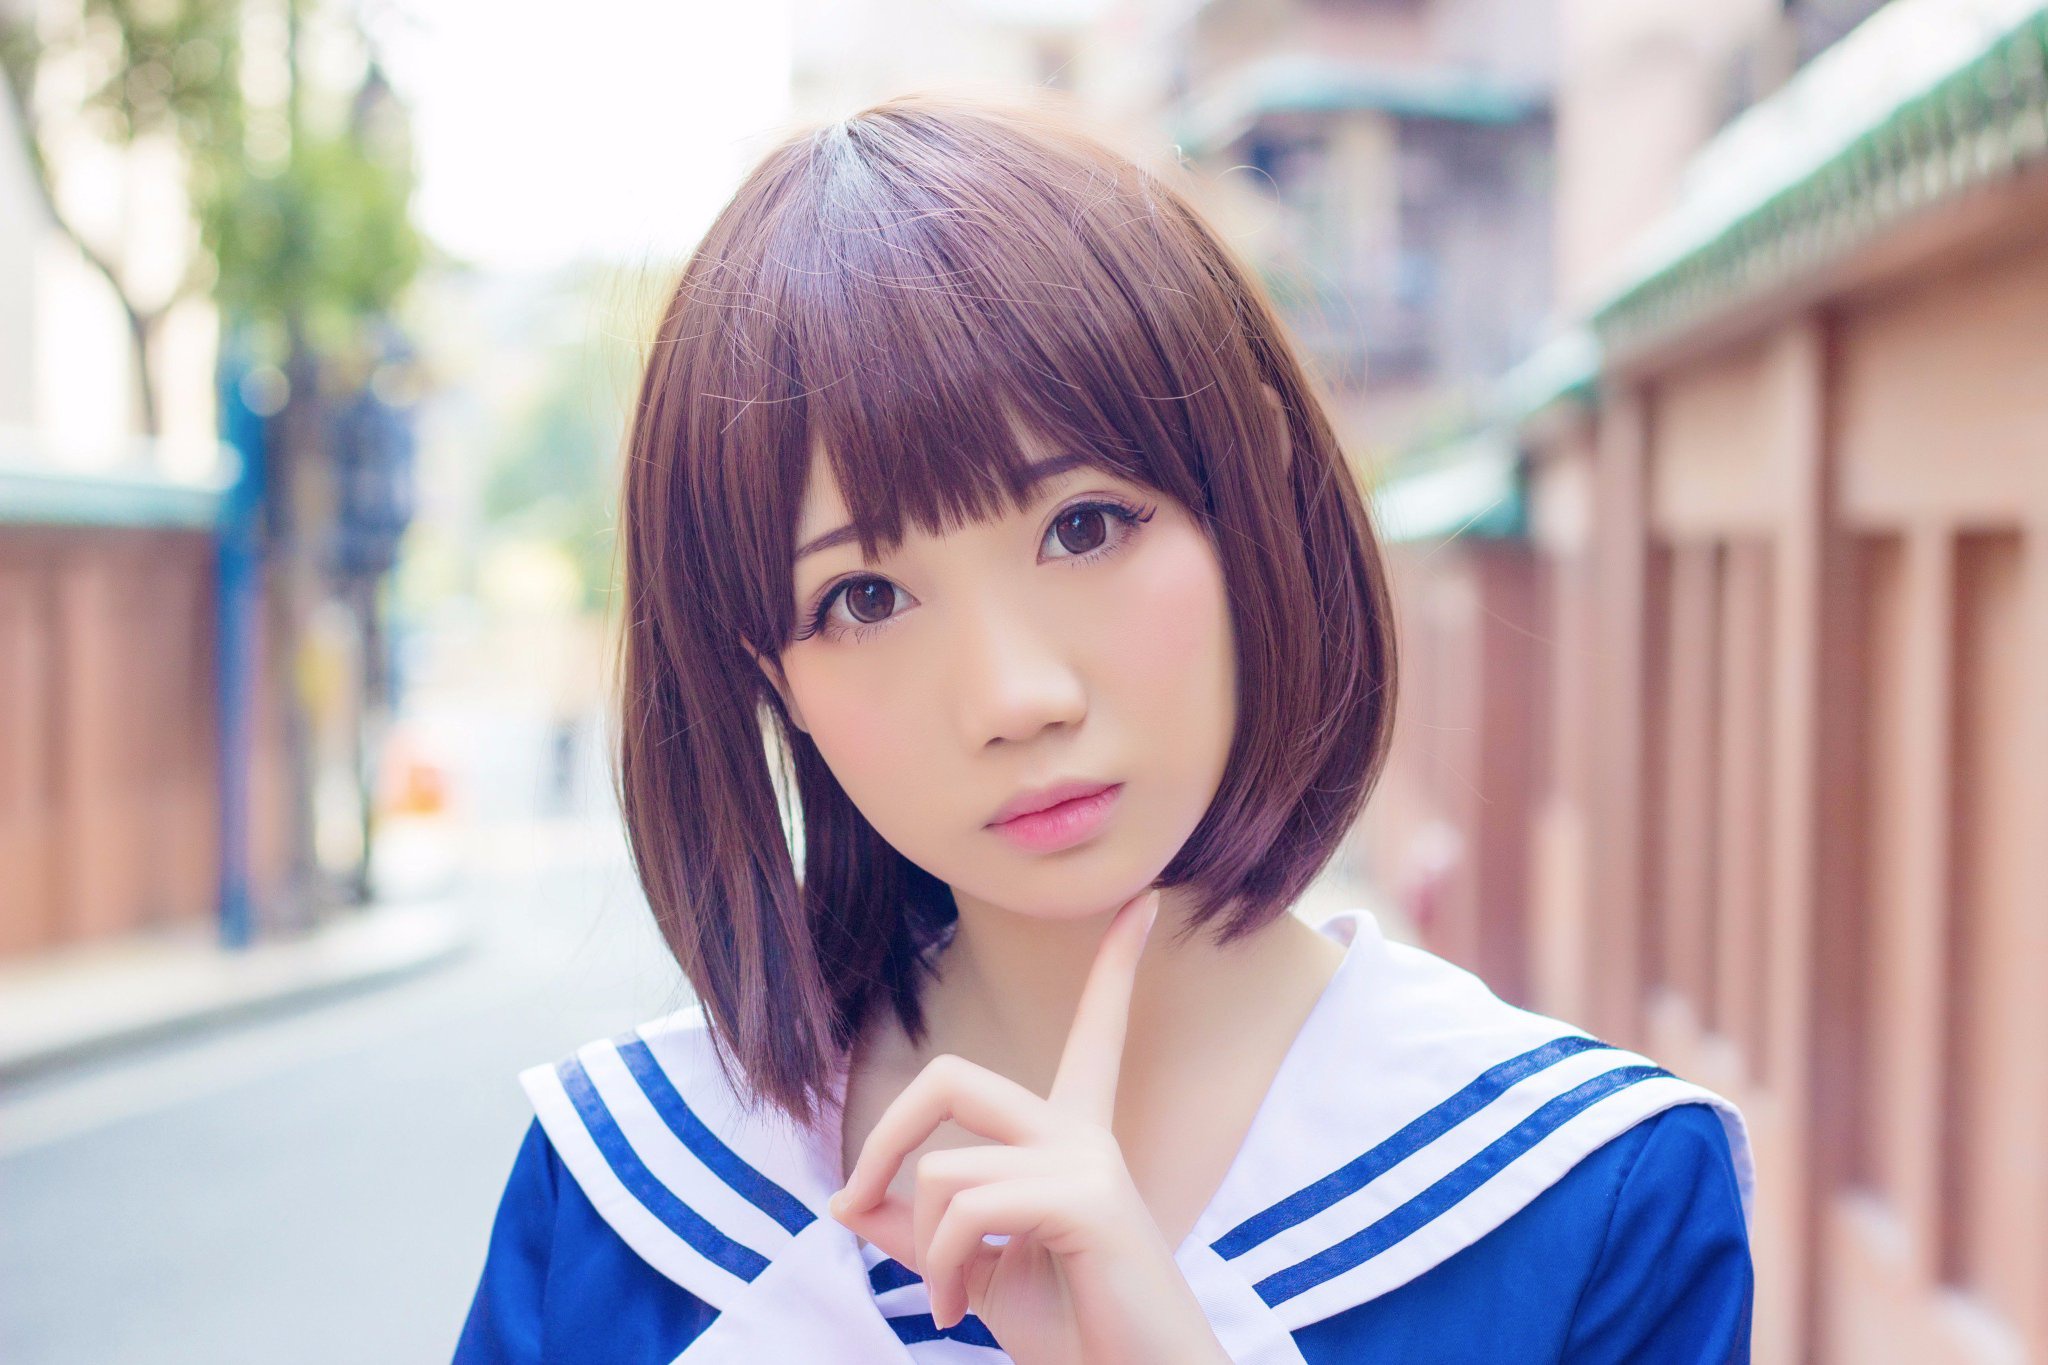 Asian Model Women Short Hair Brunette Depth Of Field Sailor Uniform Street Looking At Viewer 2048x1365